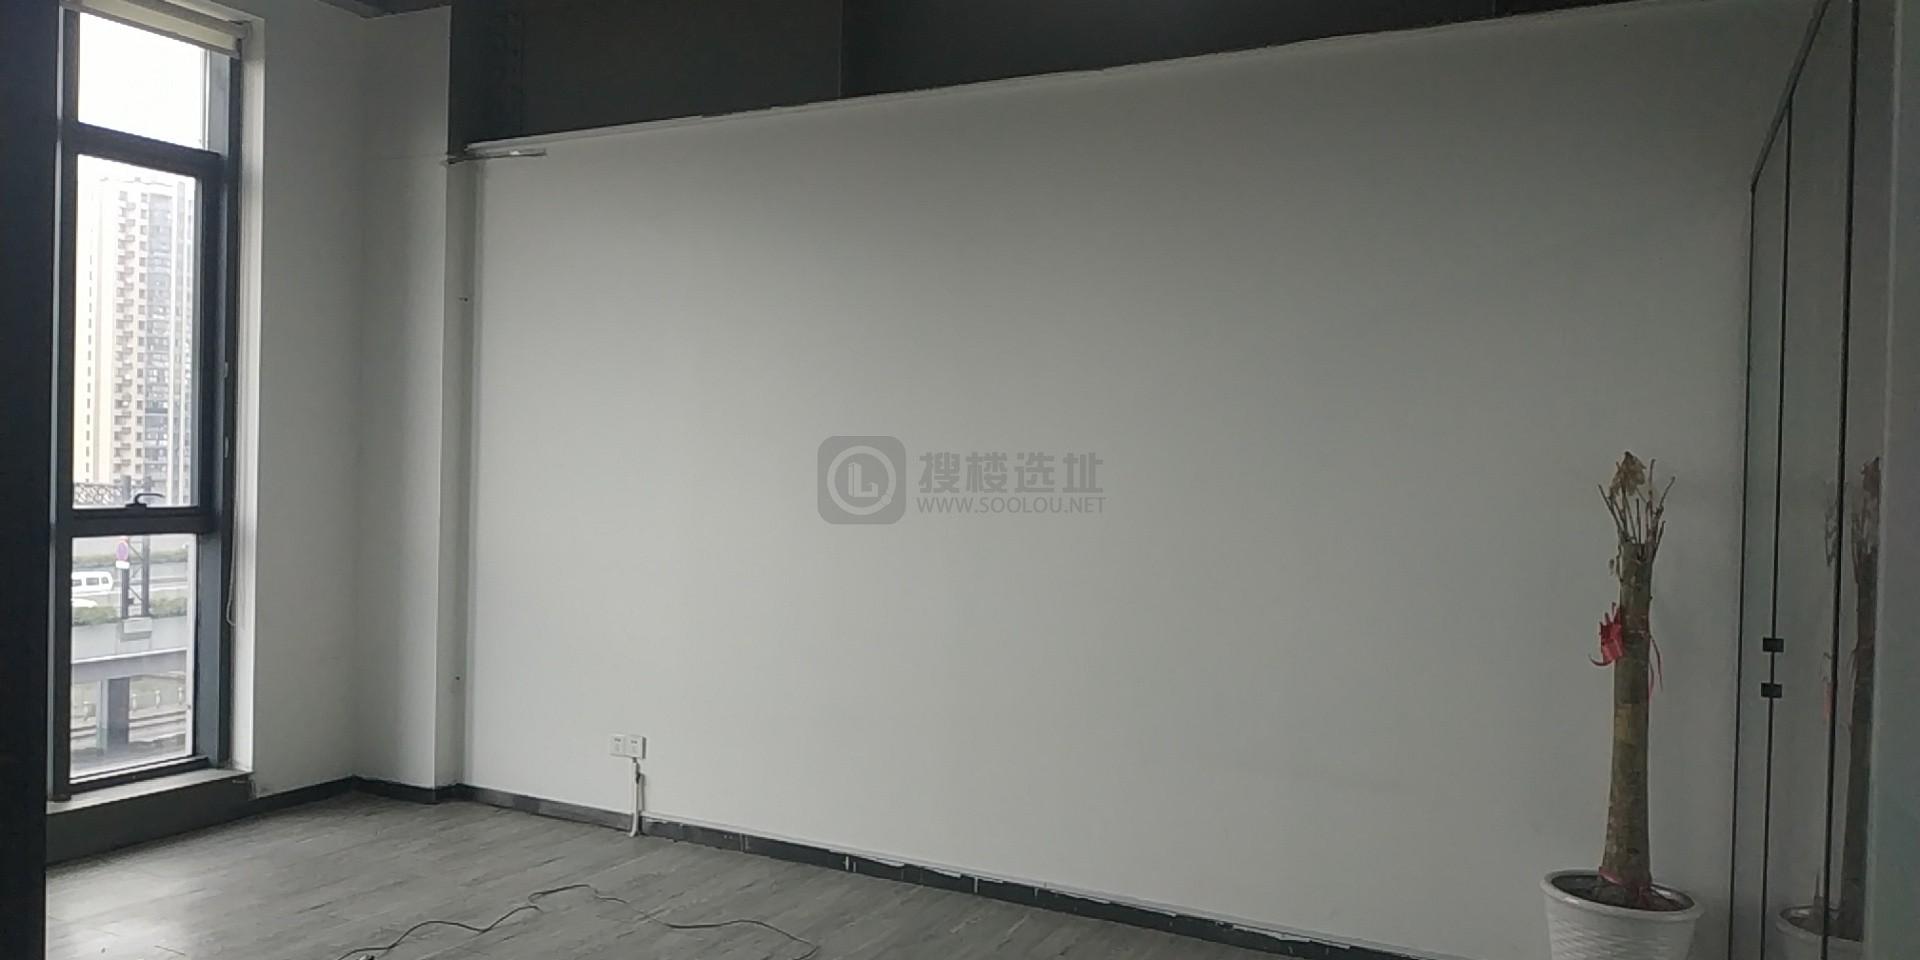 杭州运河汽车互联网产业园面积235平